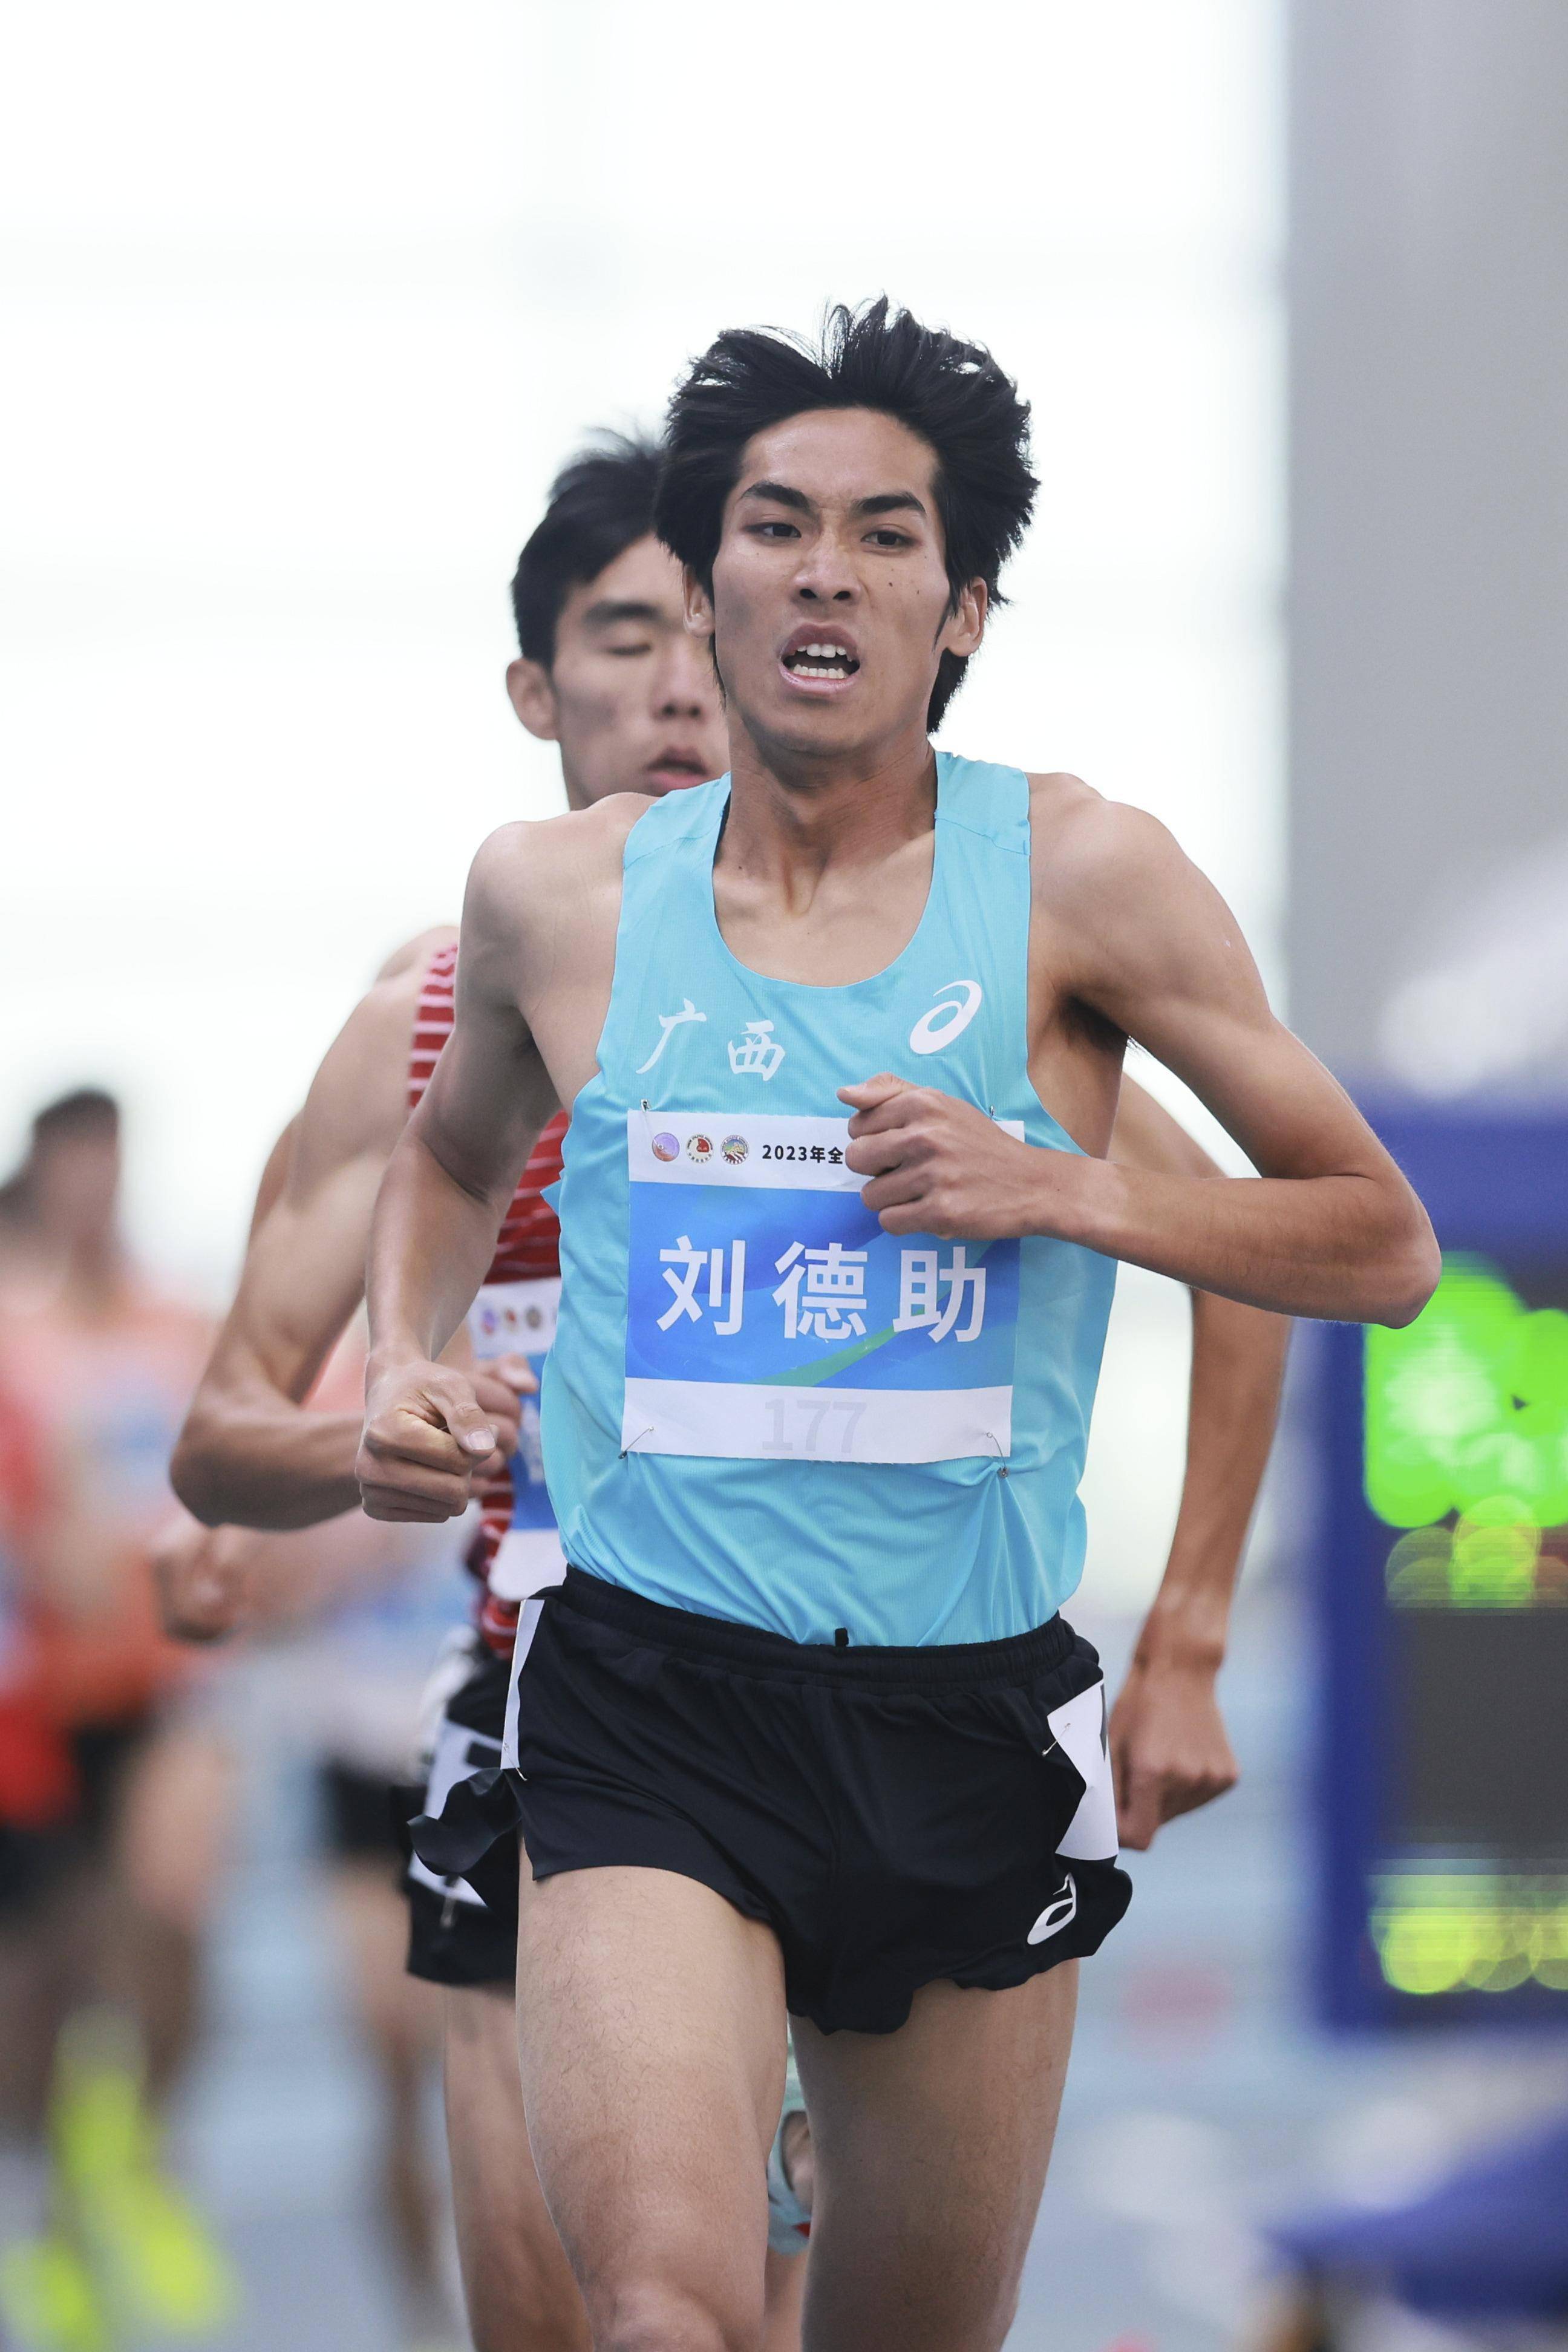 广西选手刘德助打破男子1500米全国室内纪录